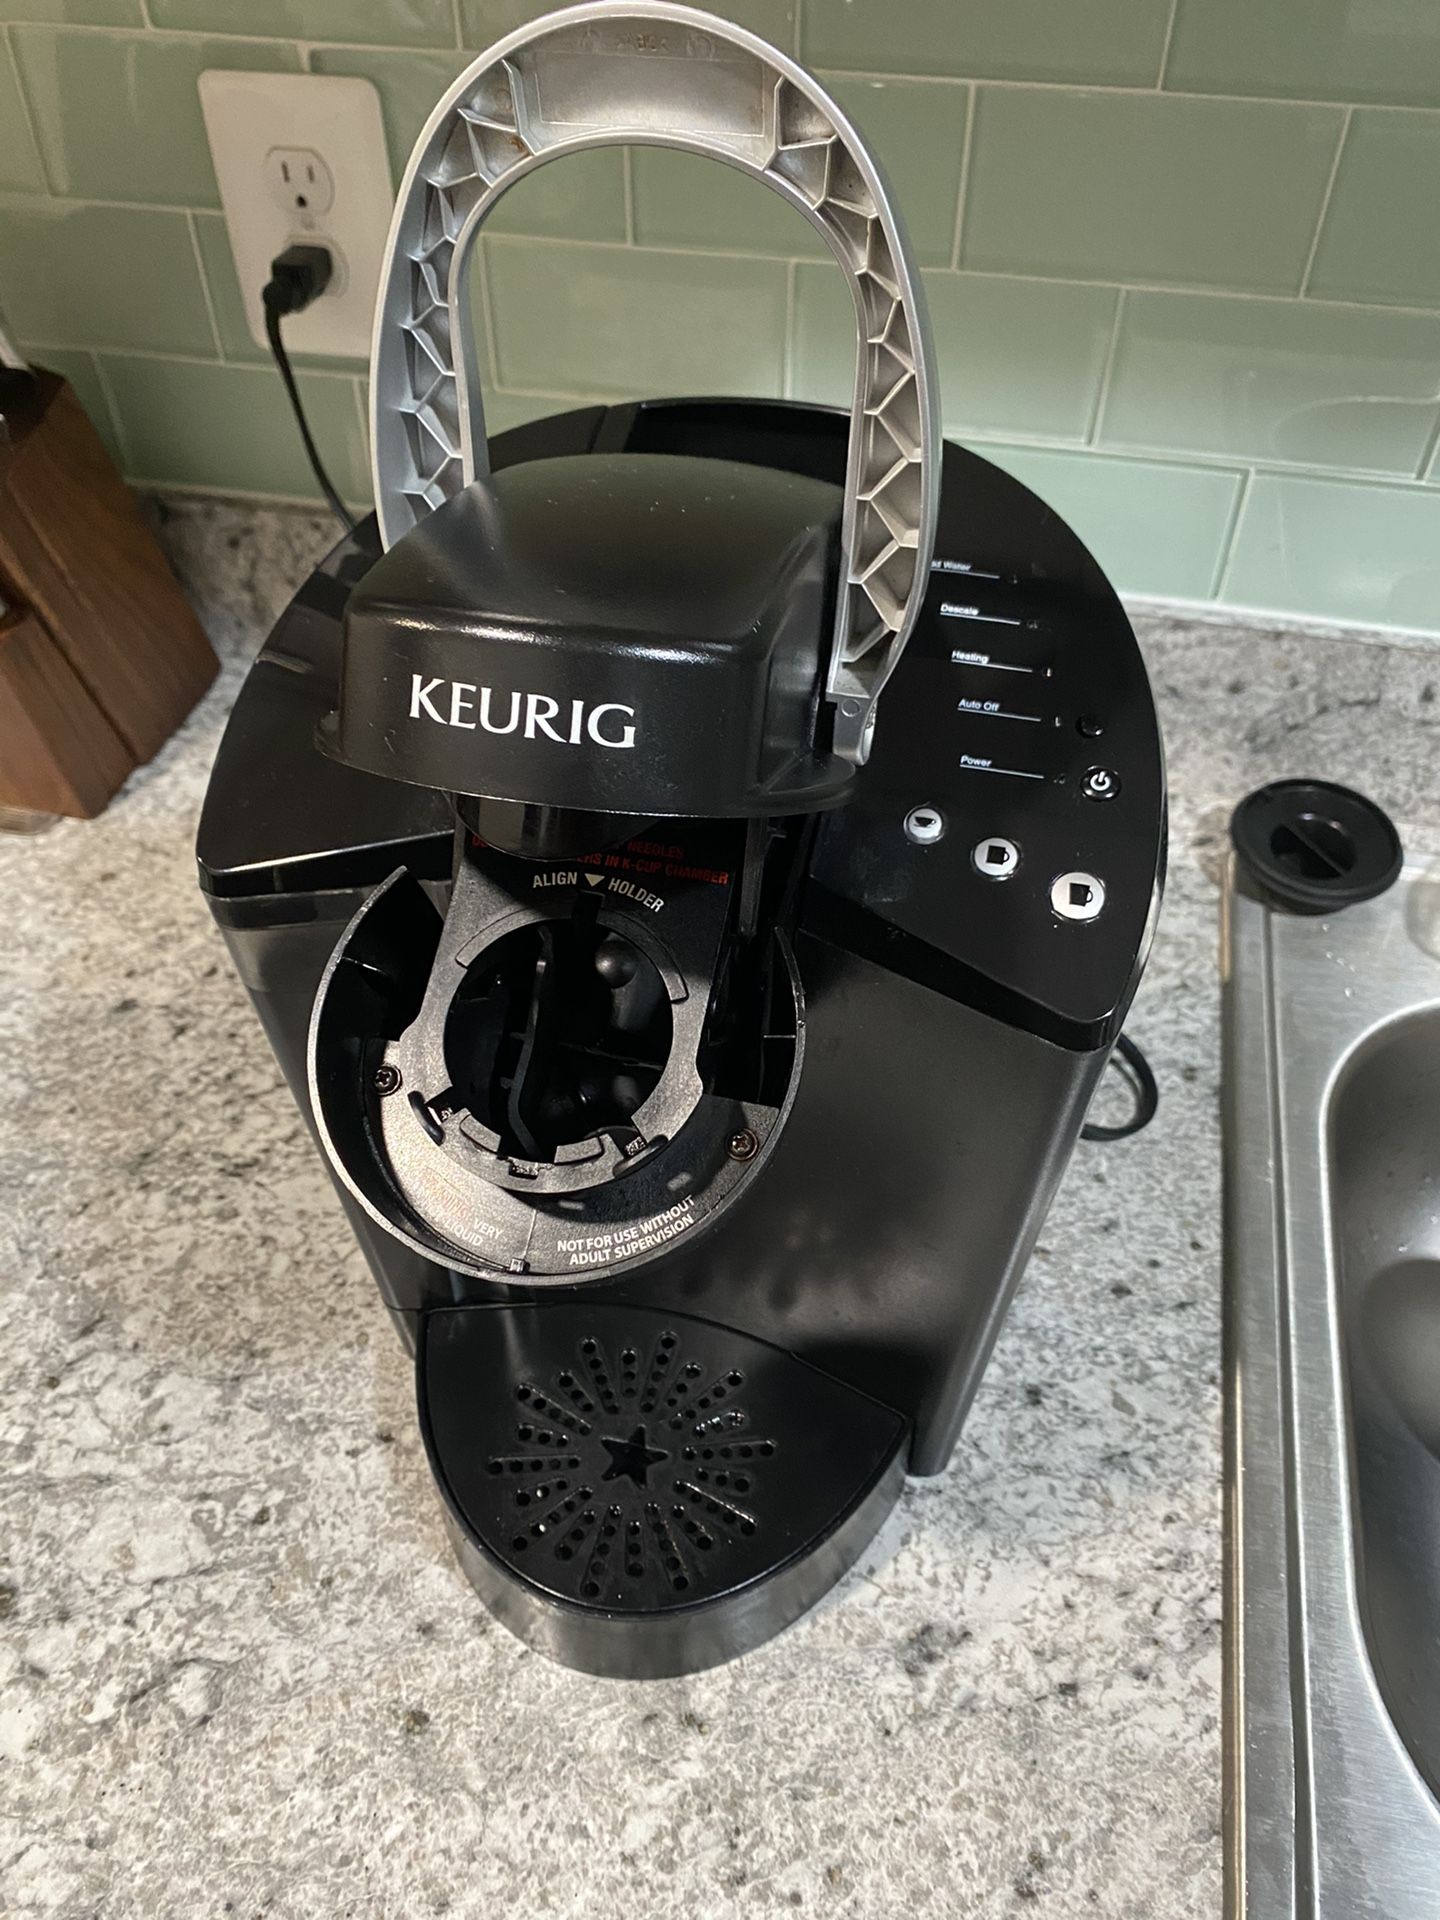 Keurig coffee maker + K-cup holder